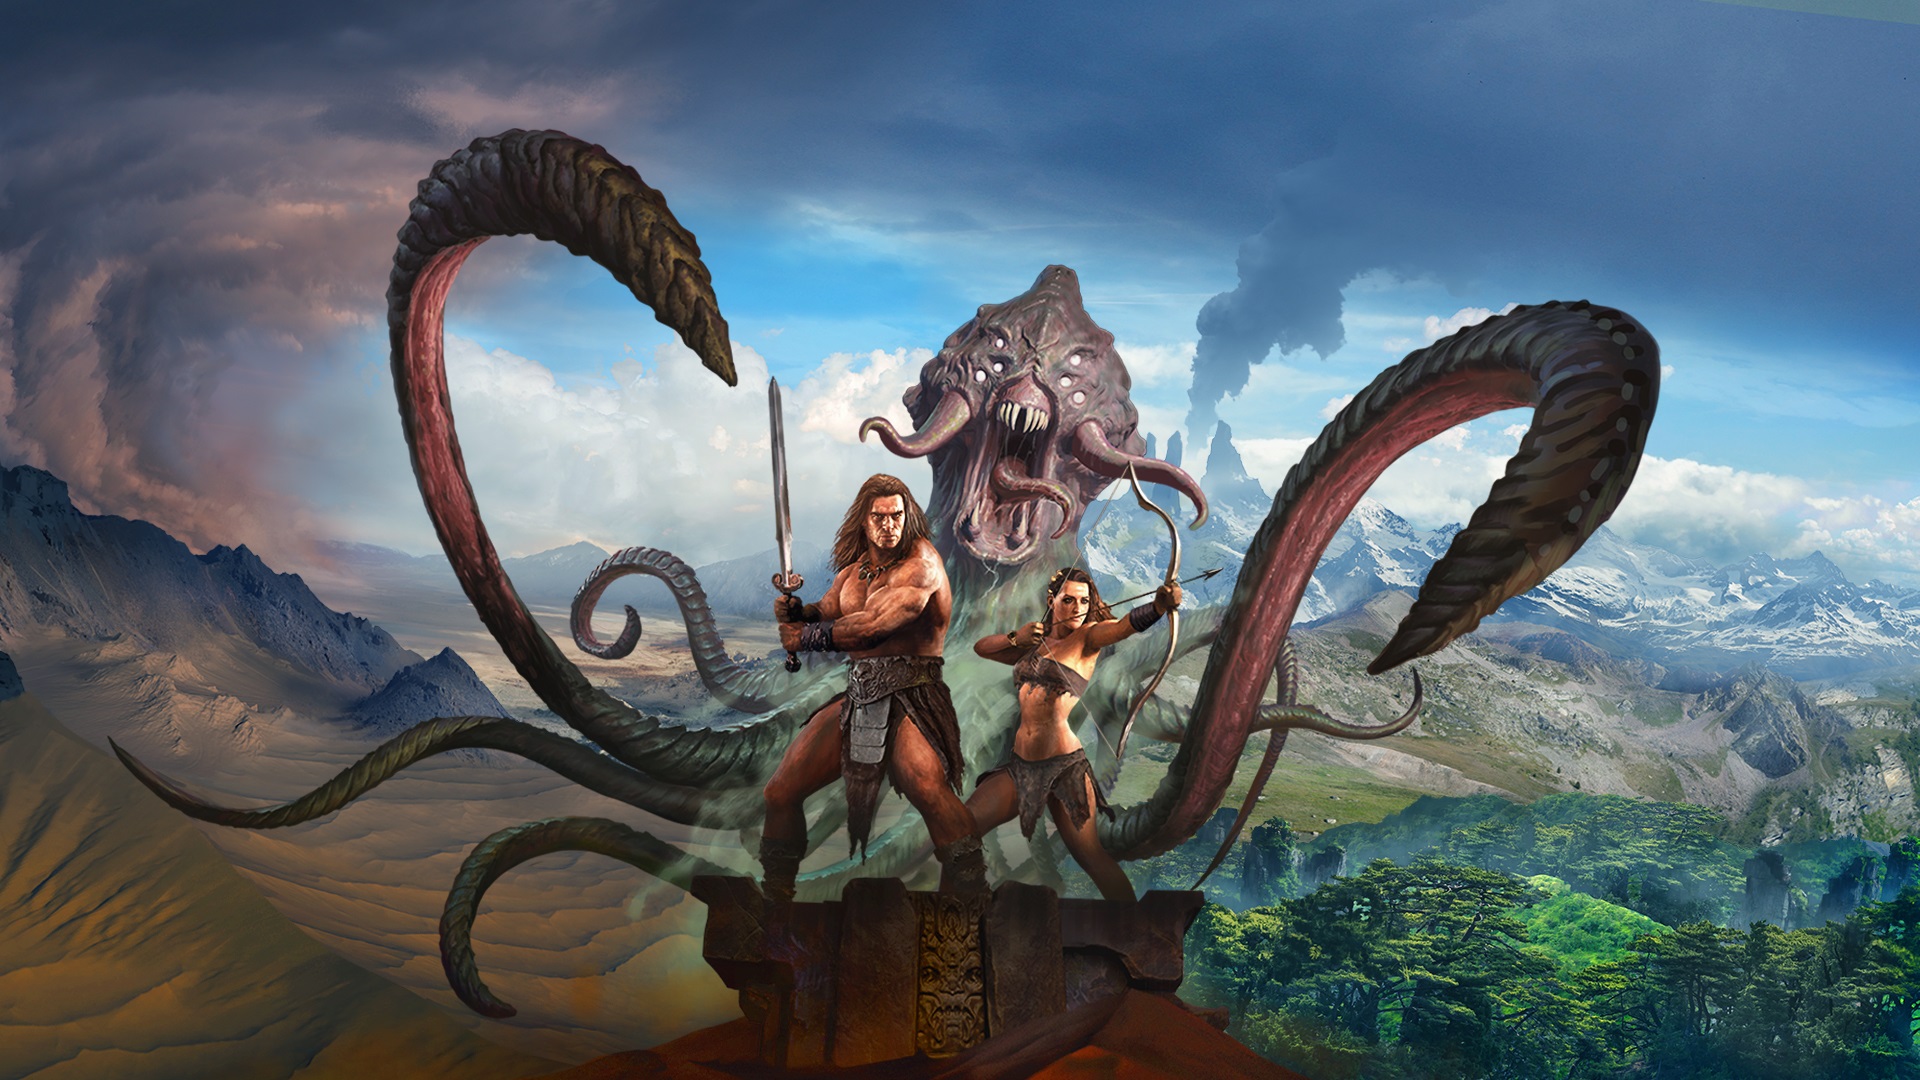 ¡La lucha por la supervivencia llega a PS4! Conan Exiles ya se encuentra disponible